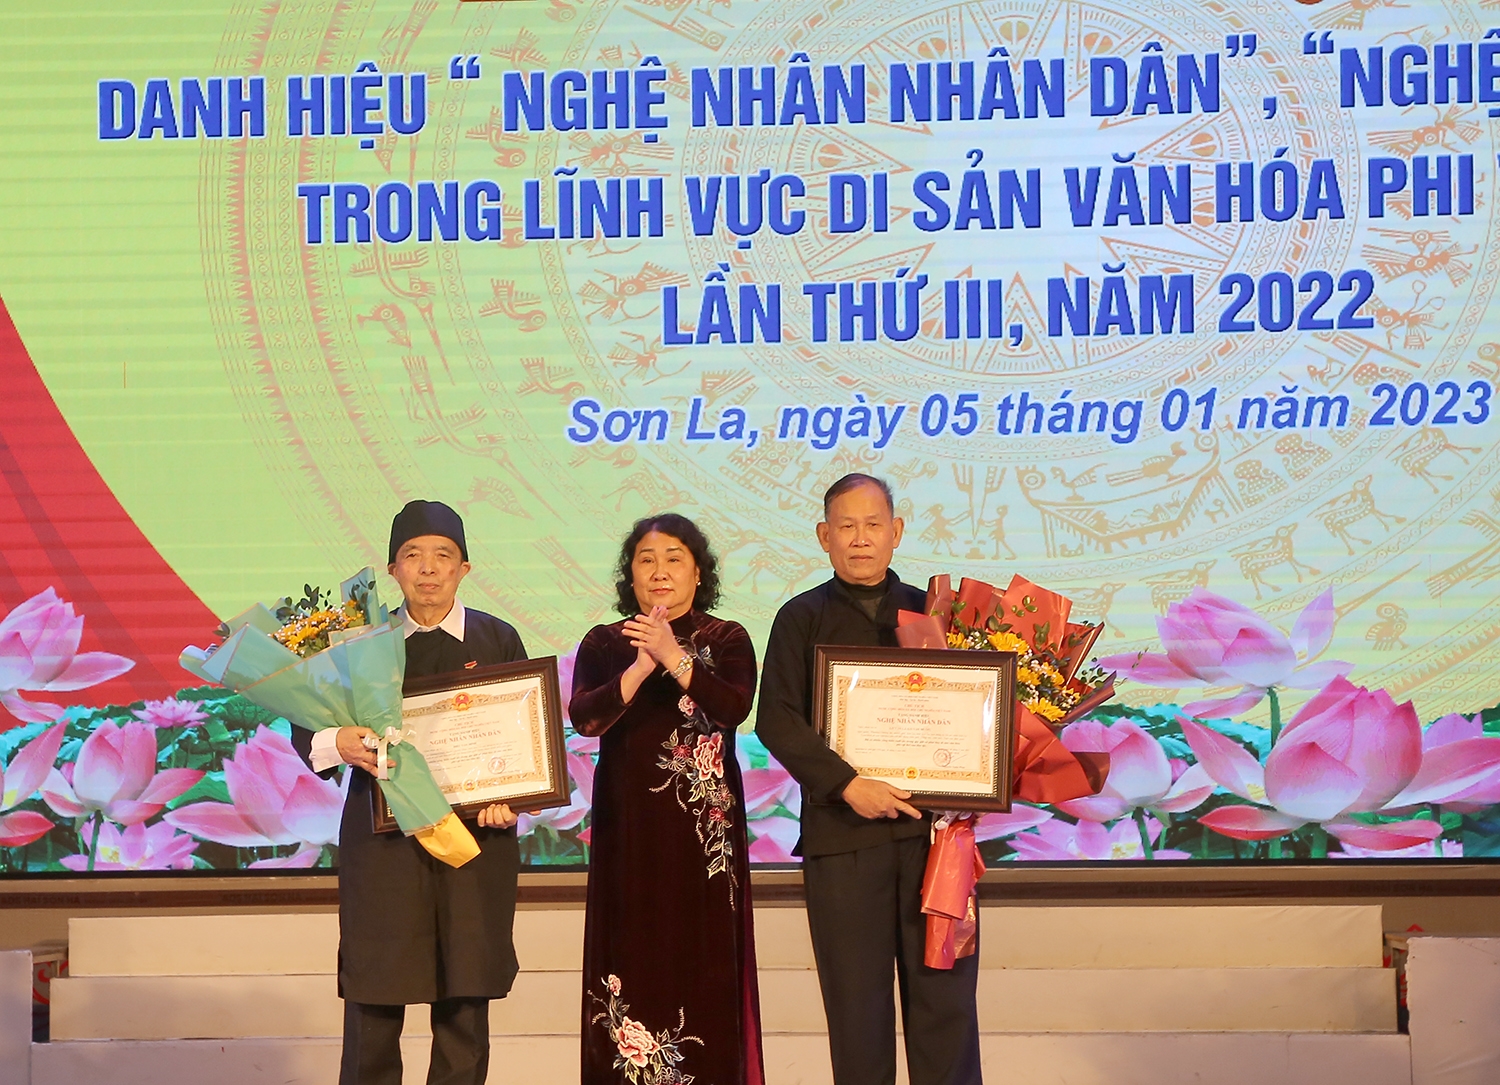 Bà Tráng Thị Xuân, Phó Chủ tịch UBND tỉnh Sơn La chuyển trao danh hiệu vinh dự Nhà nước “Nghệ nhân Nhân dân” cho 2 nghệ nhân.